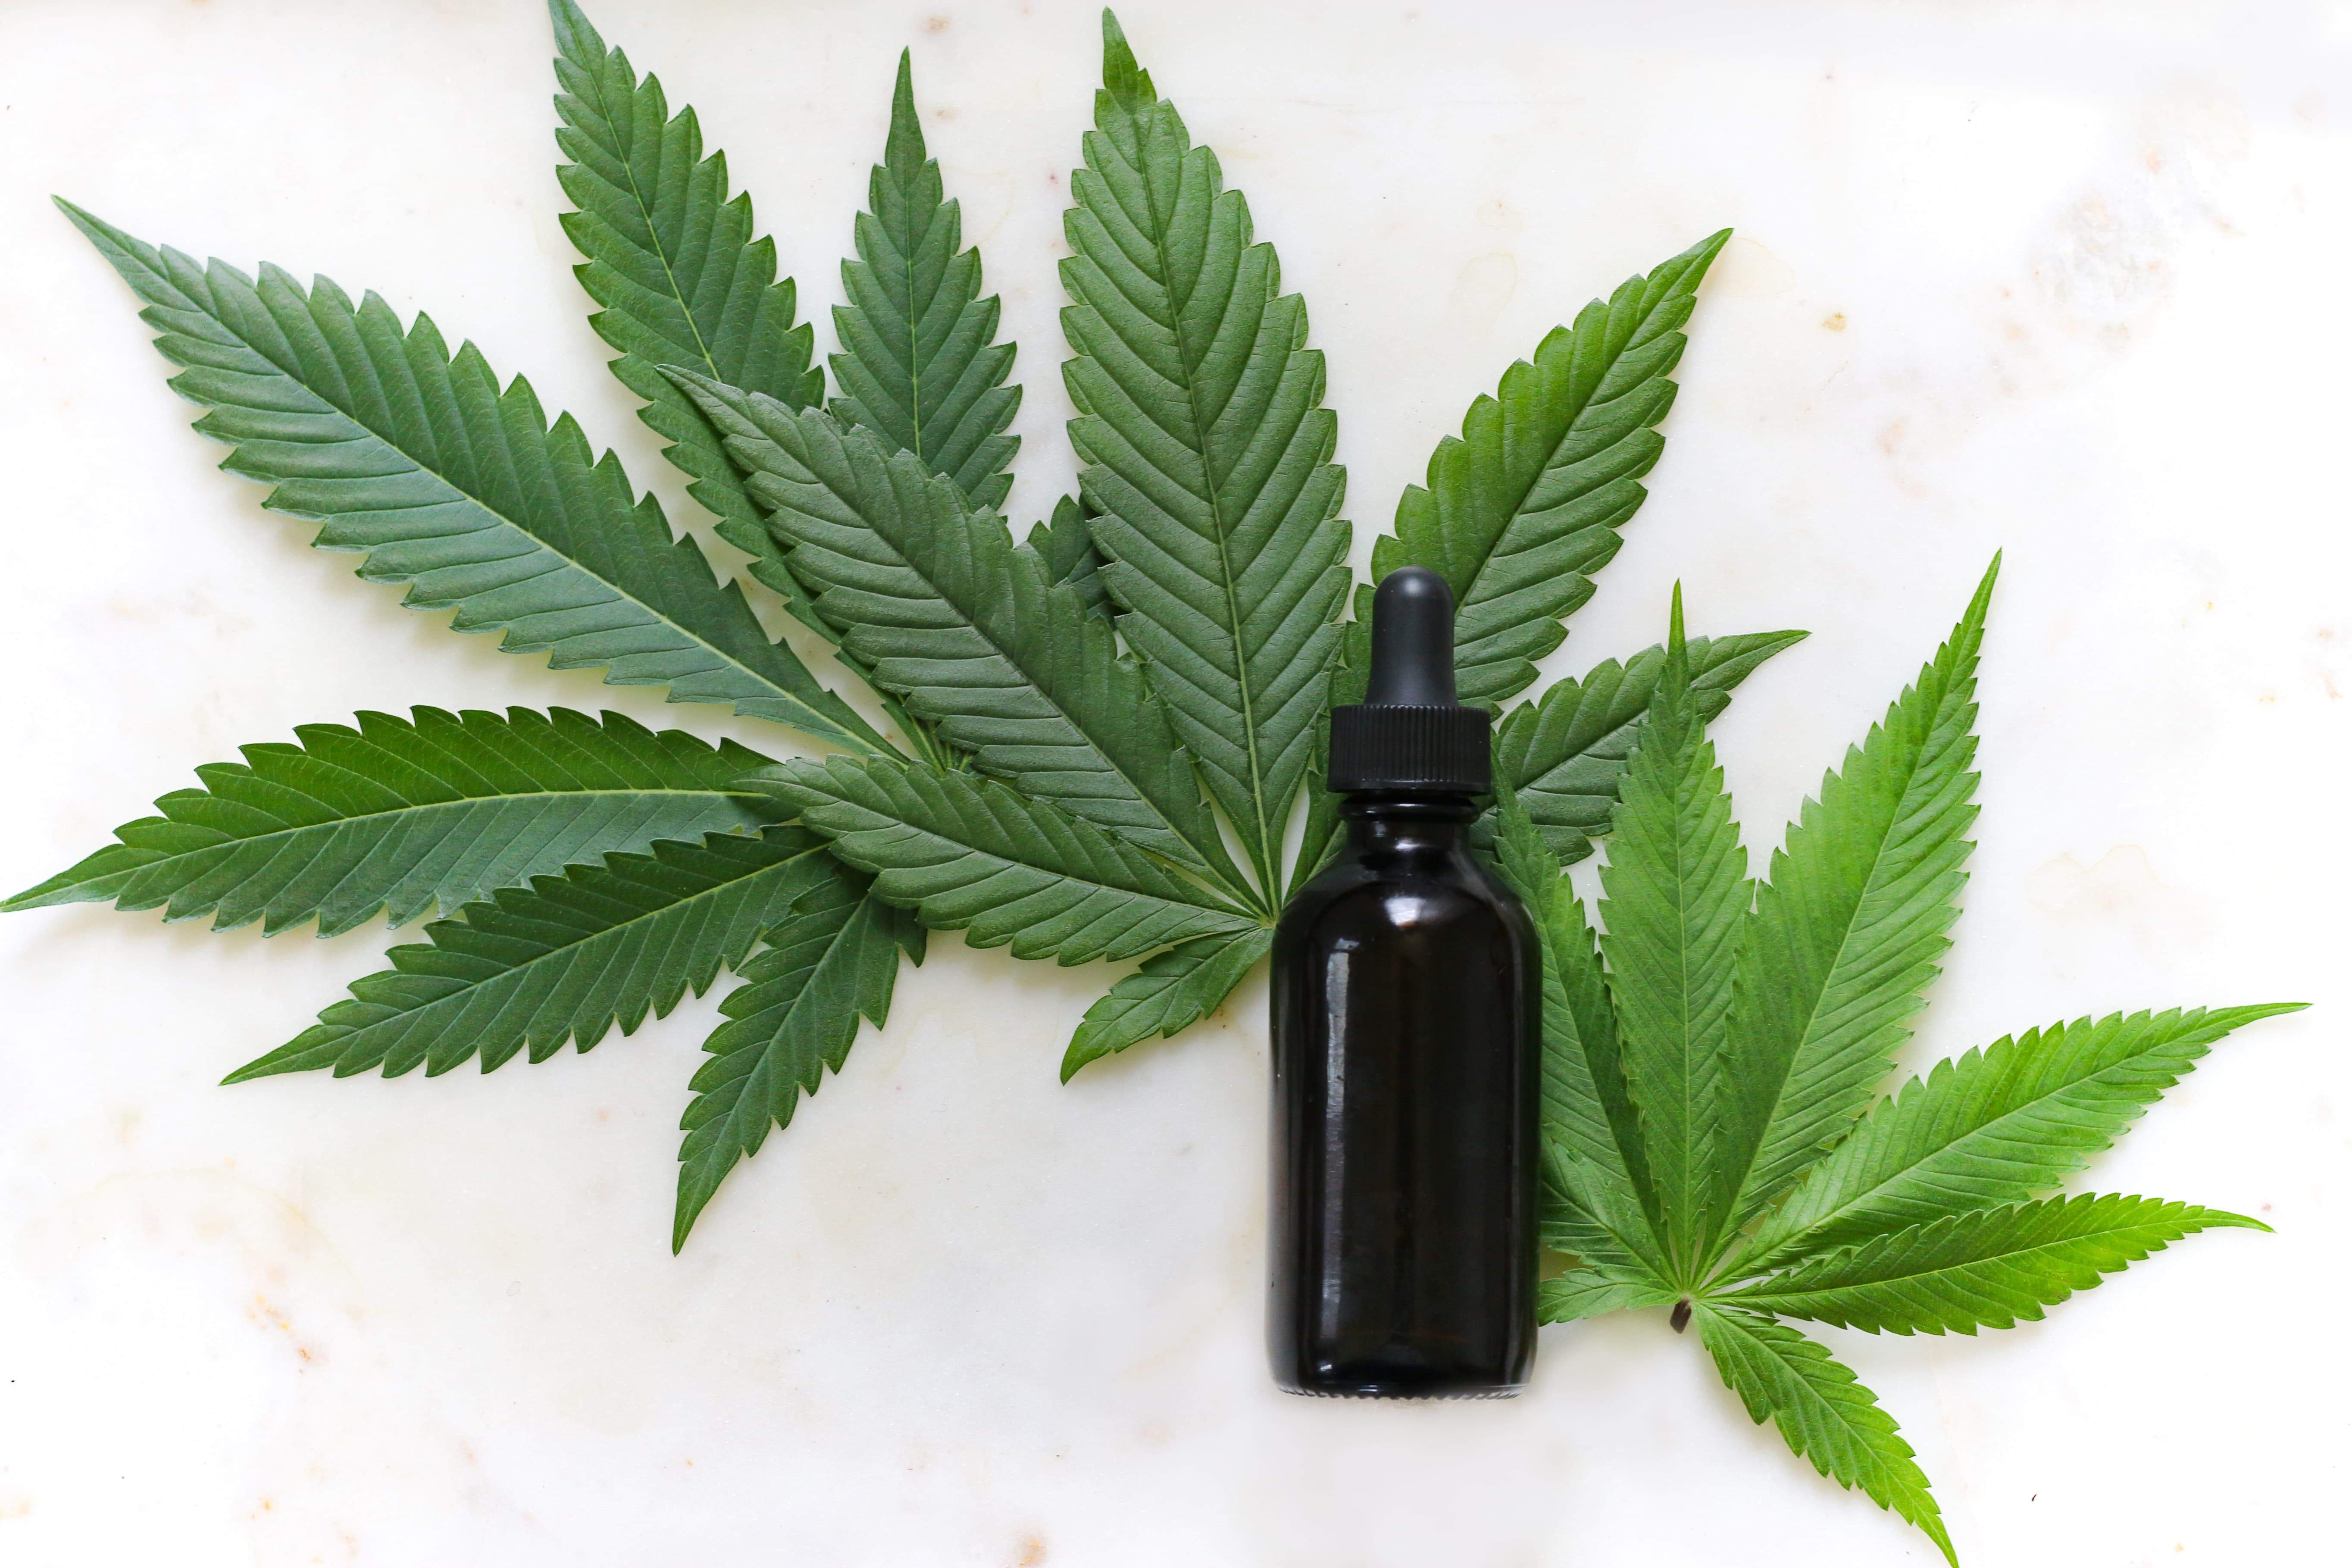 Oferta da Cannabis medicinal pelo SUS será tema de audiência pública